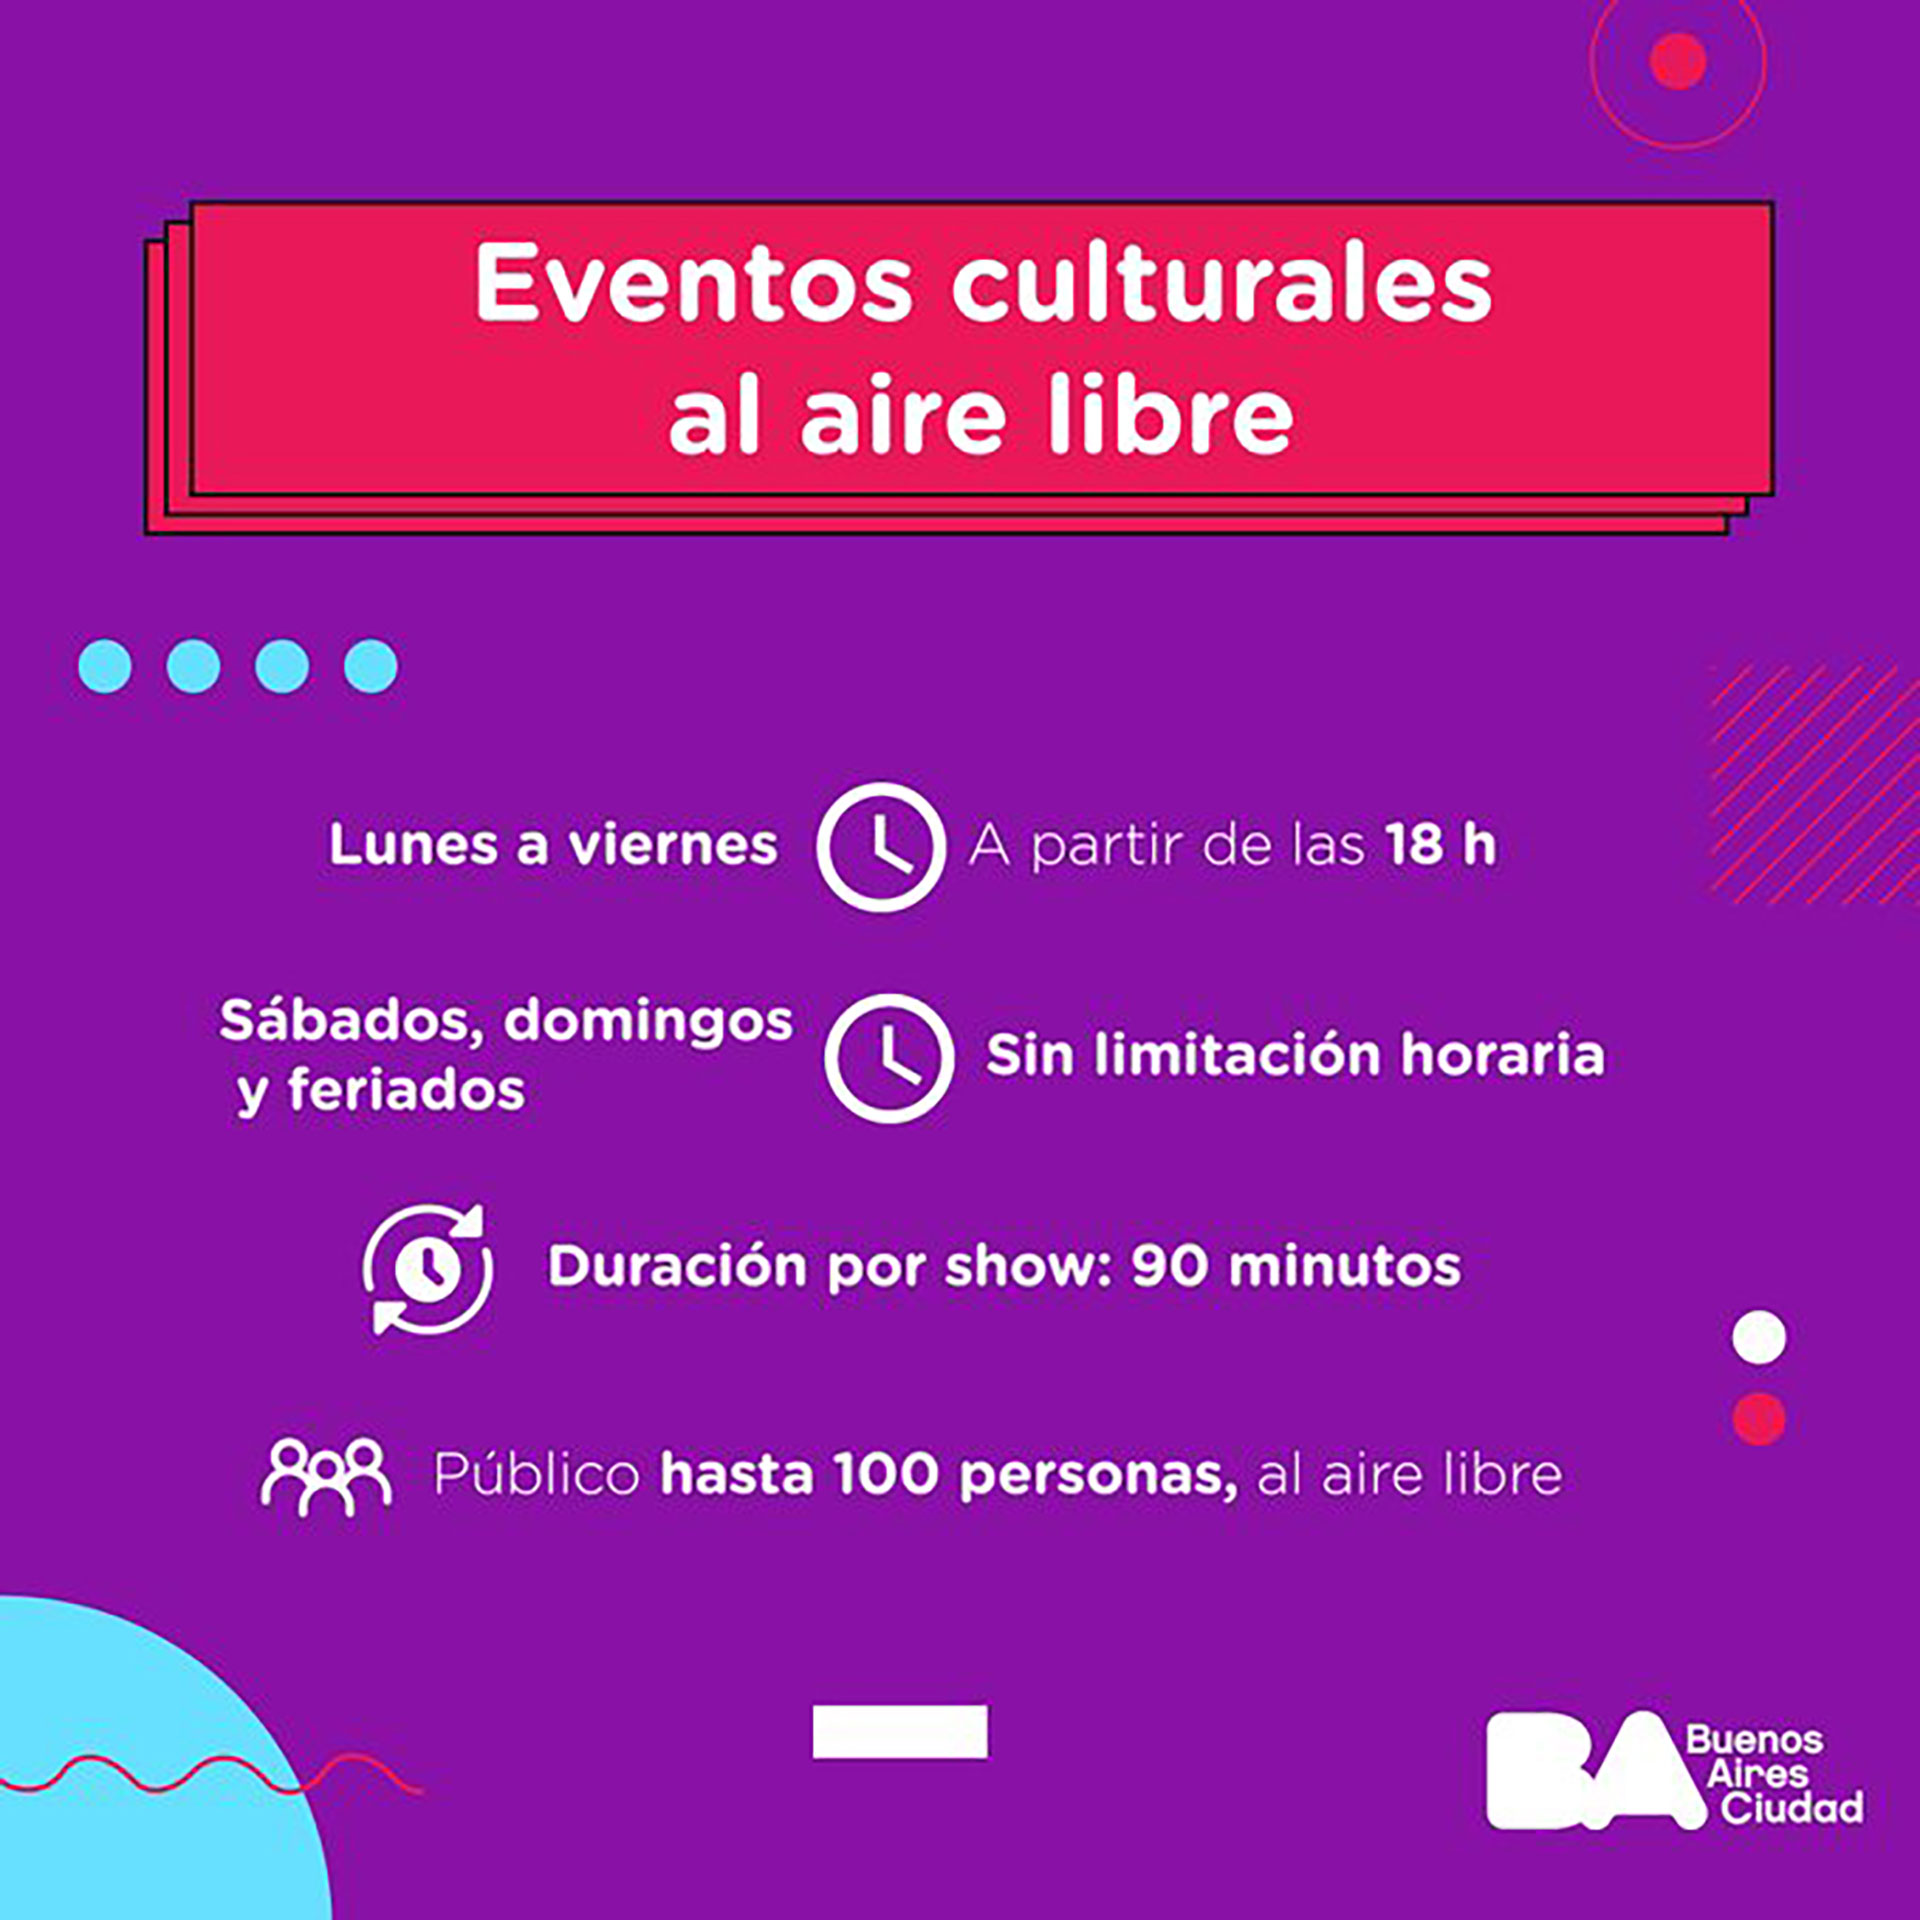 El anuncio fue comunicado a través del Ministerio de Cultura de la Ciudad de Buenos Aires (@datacultura)
